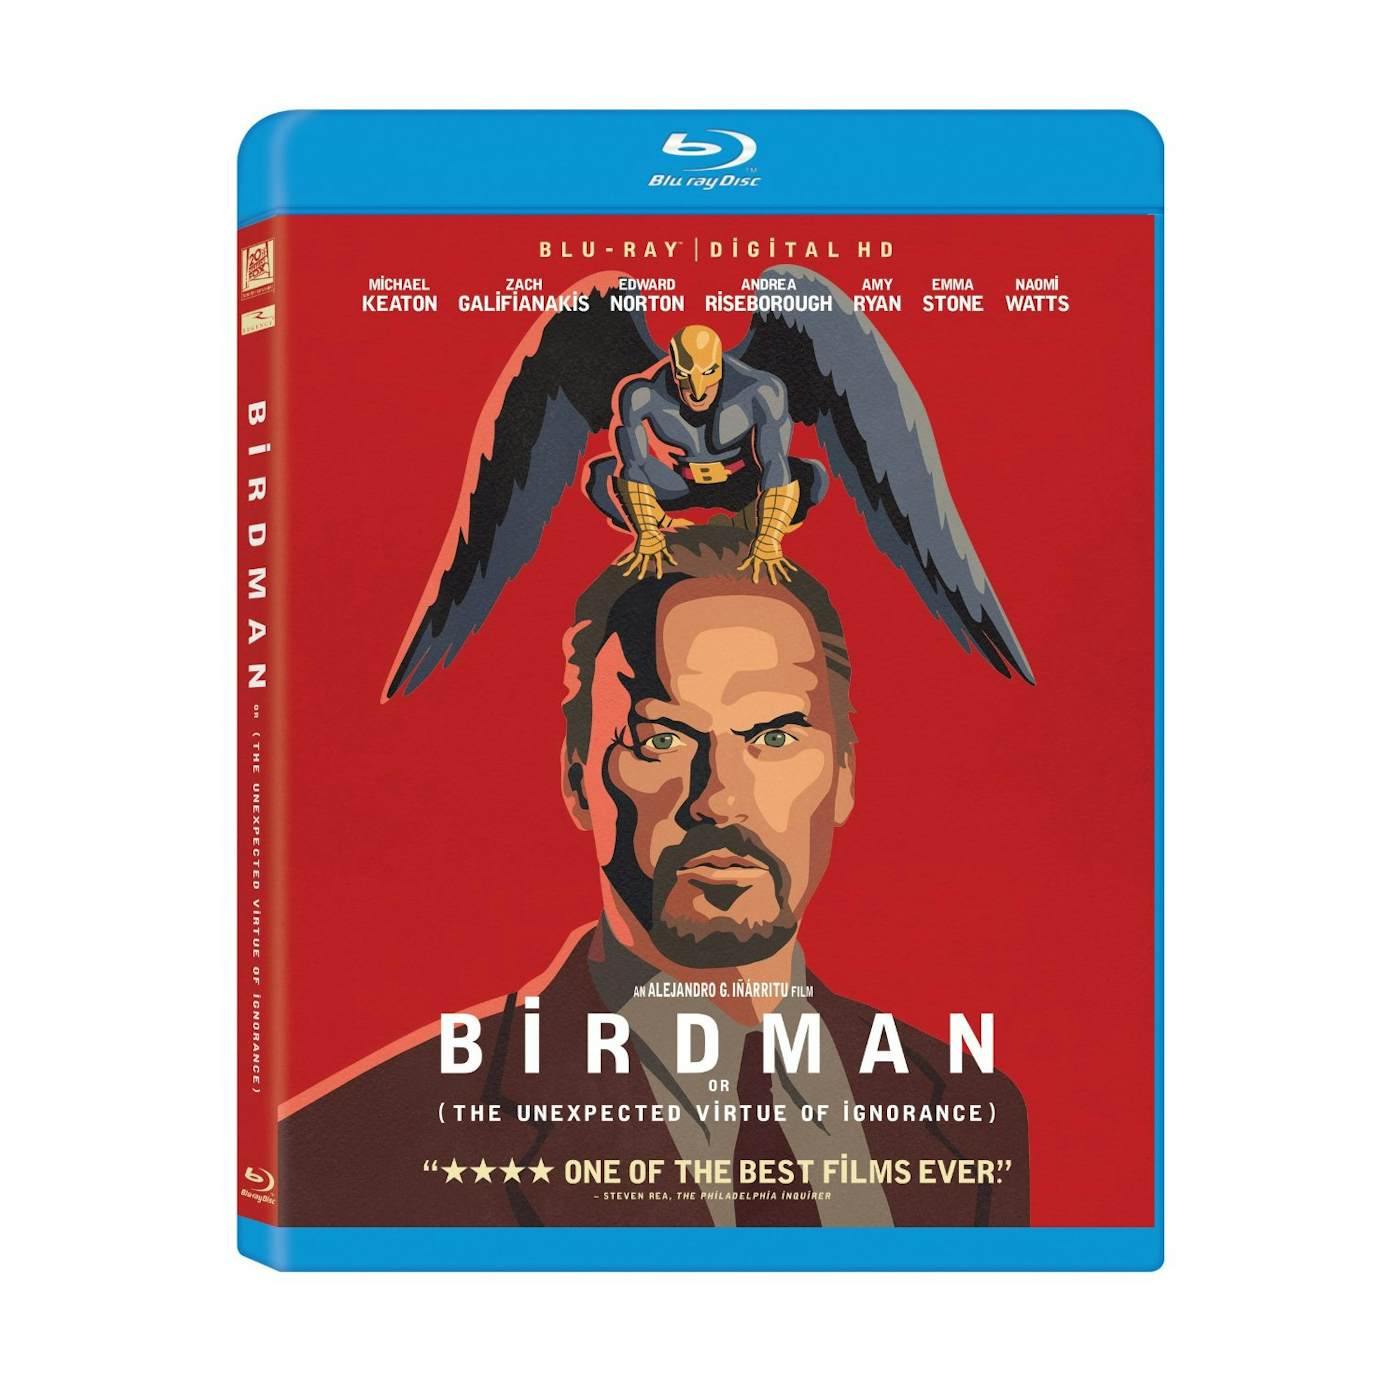 BIRDMAN Blu-ray